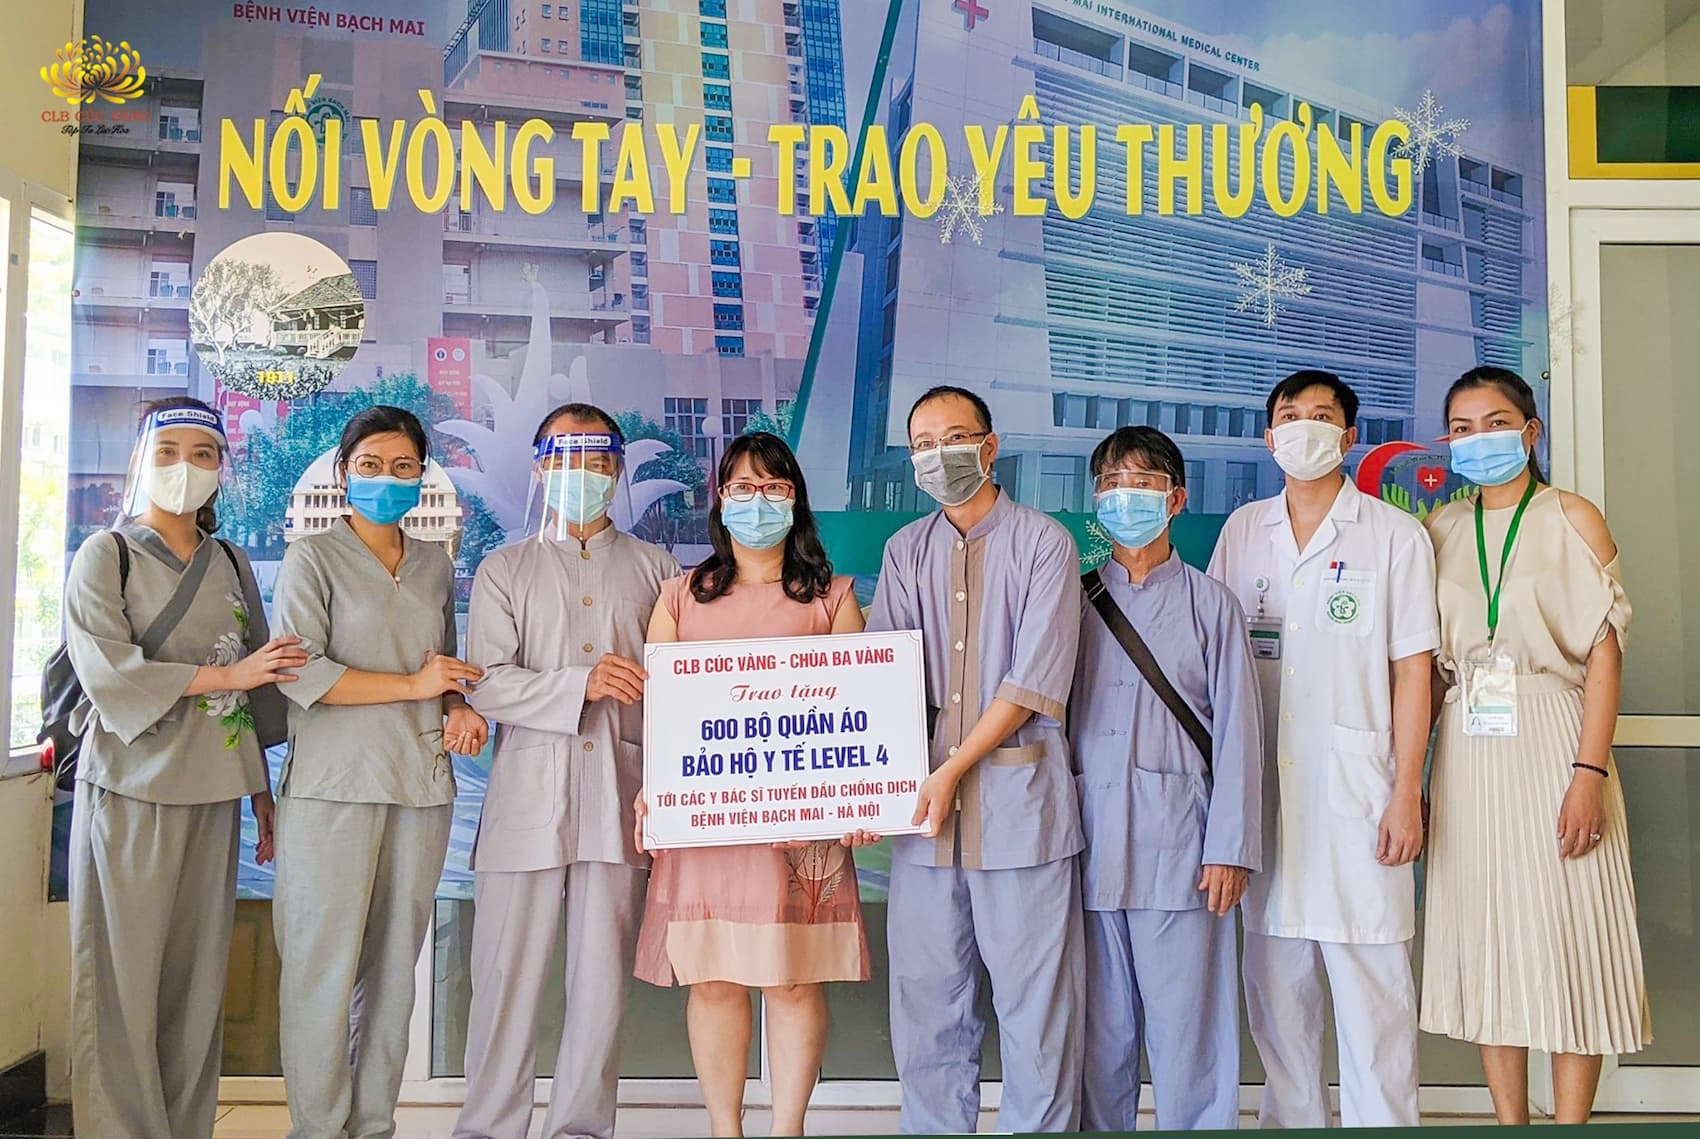 TS. BS Hoàng Thị Phú Bằng - Phó trưởng phòng công tác xã hội đón nhận 600 bộ đồ bảo hộ y tế từ các Phật tử CLB Cúc Vàng